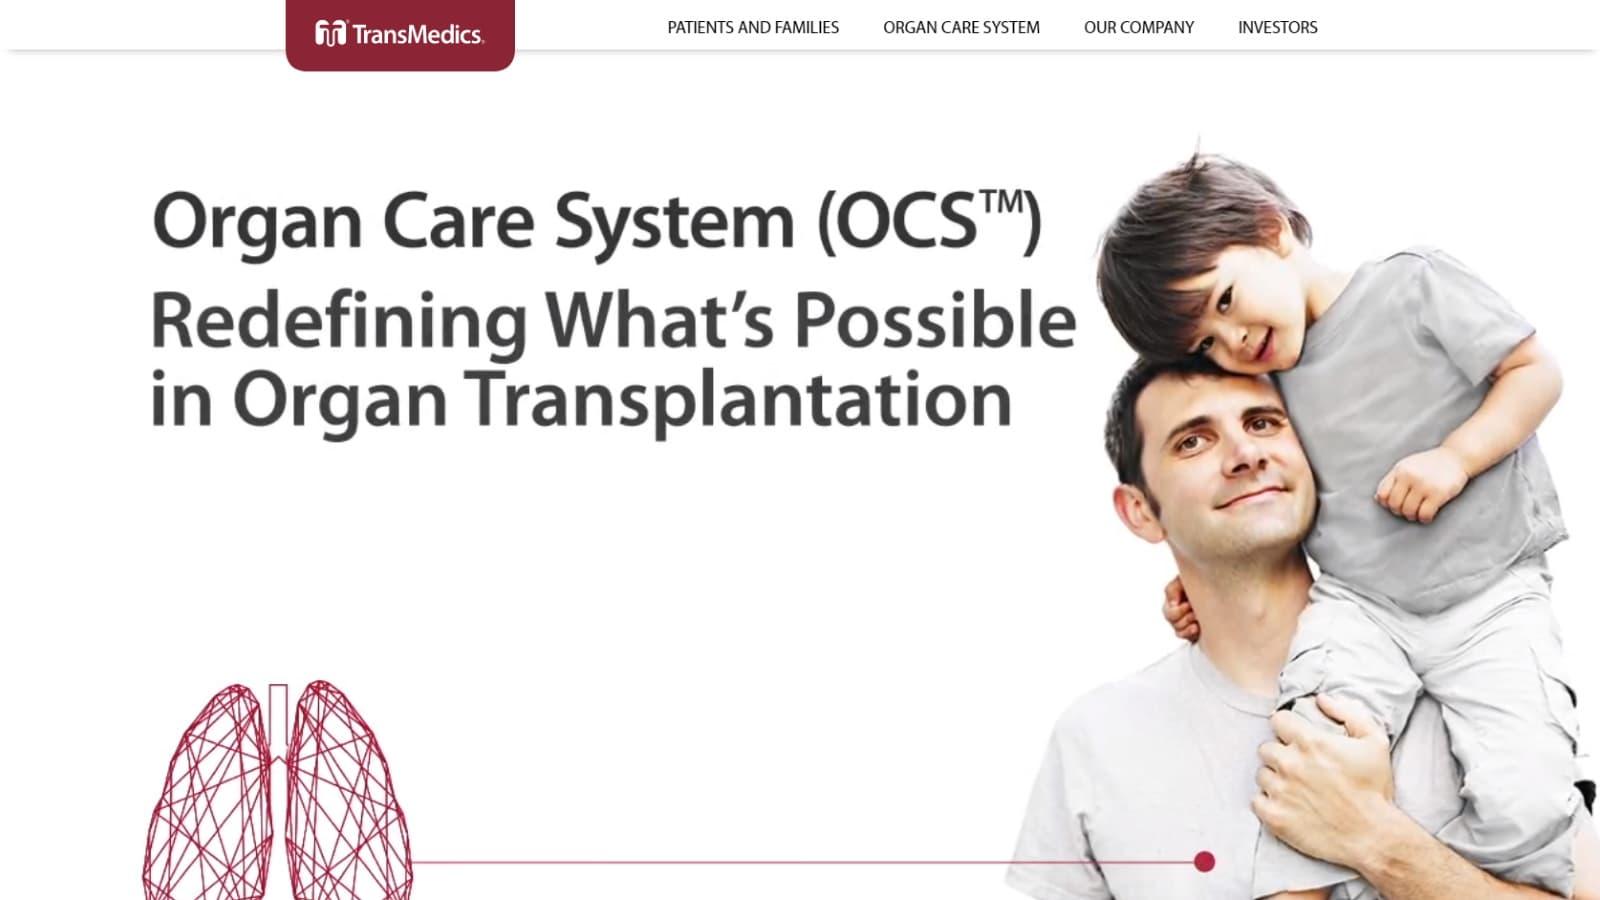 腎臓移植が全米3位の病院、TransMedics製品の導入を評価